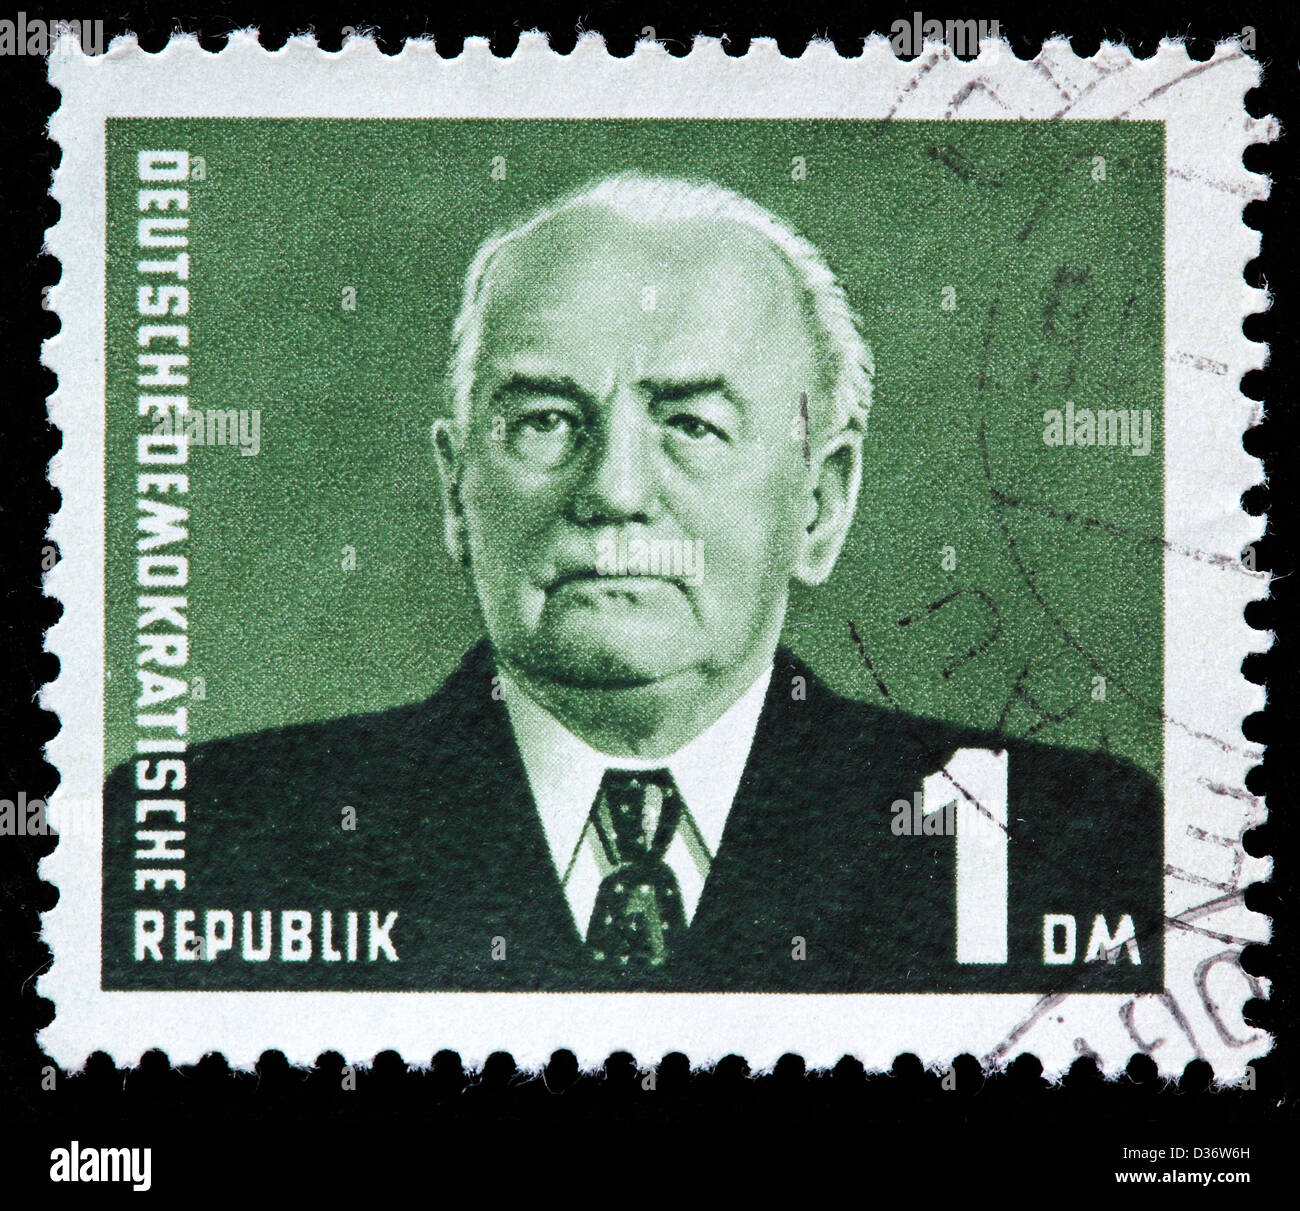 Präsident Wilhelm Pieck, Briefmarke, Deutschland, 1953 Stockfoto